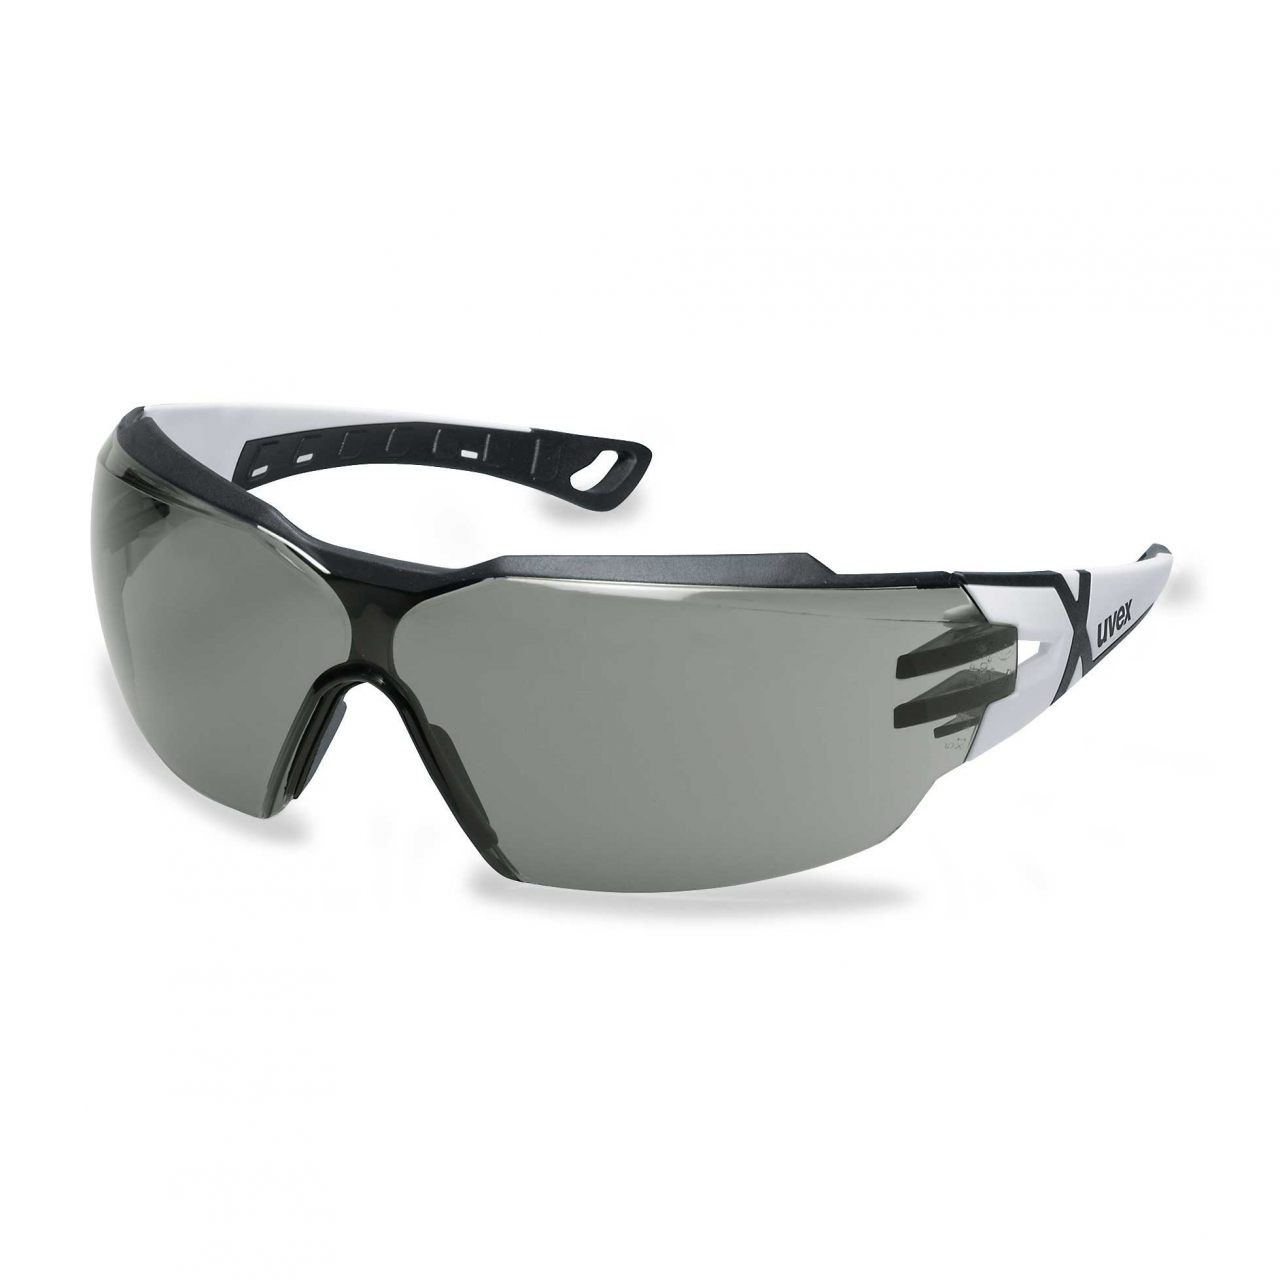 Schutzbrille/Sonnenbrille Uvex pheos cx2 weiss/schwarz, PC grau